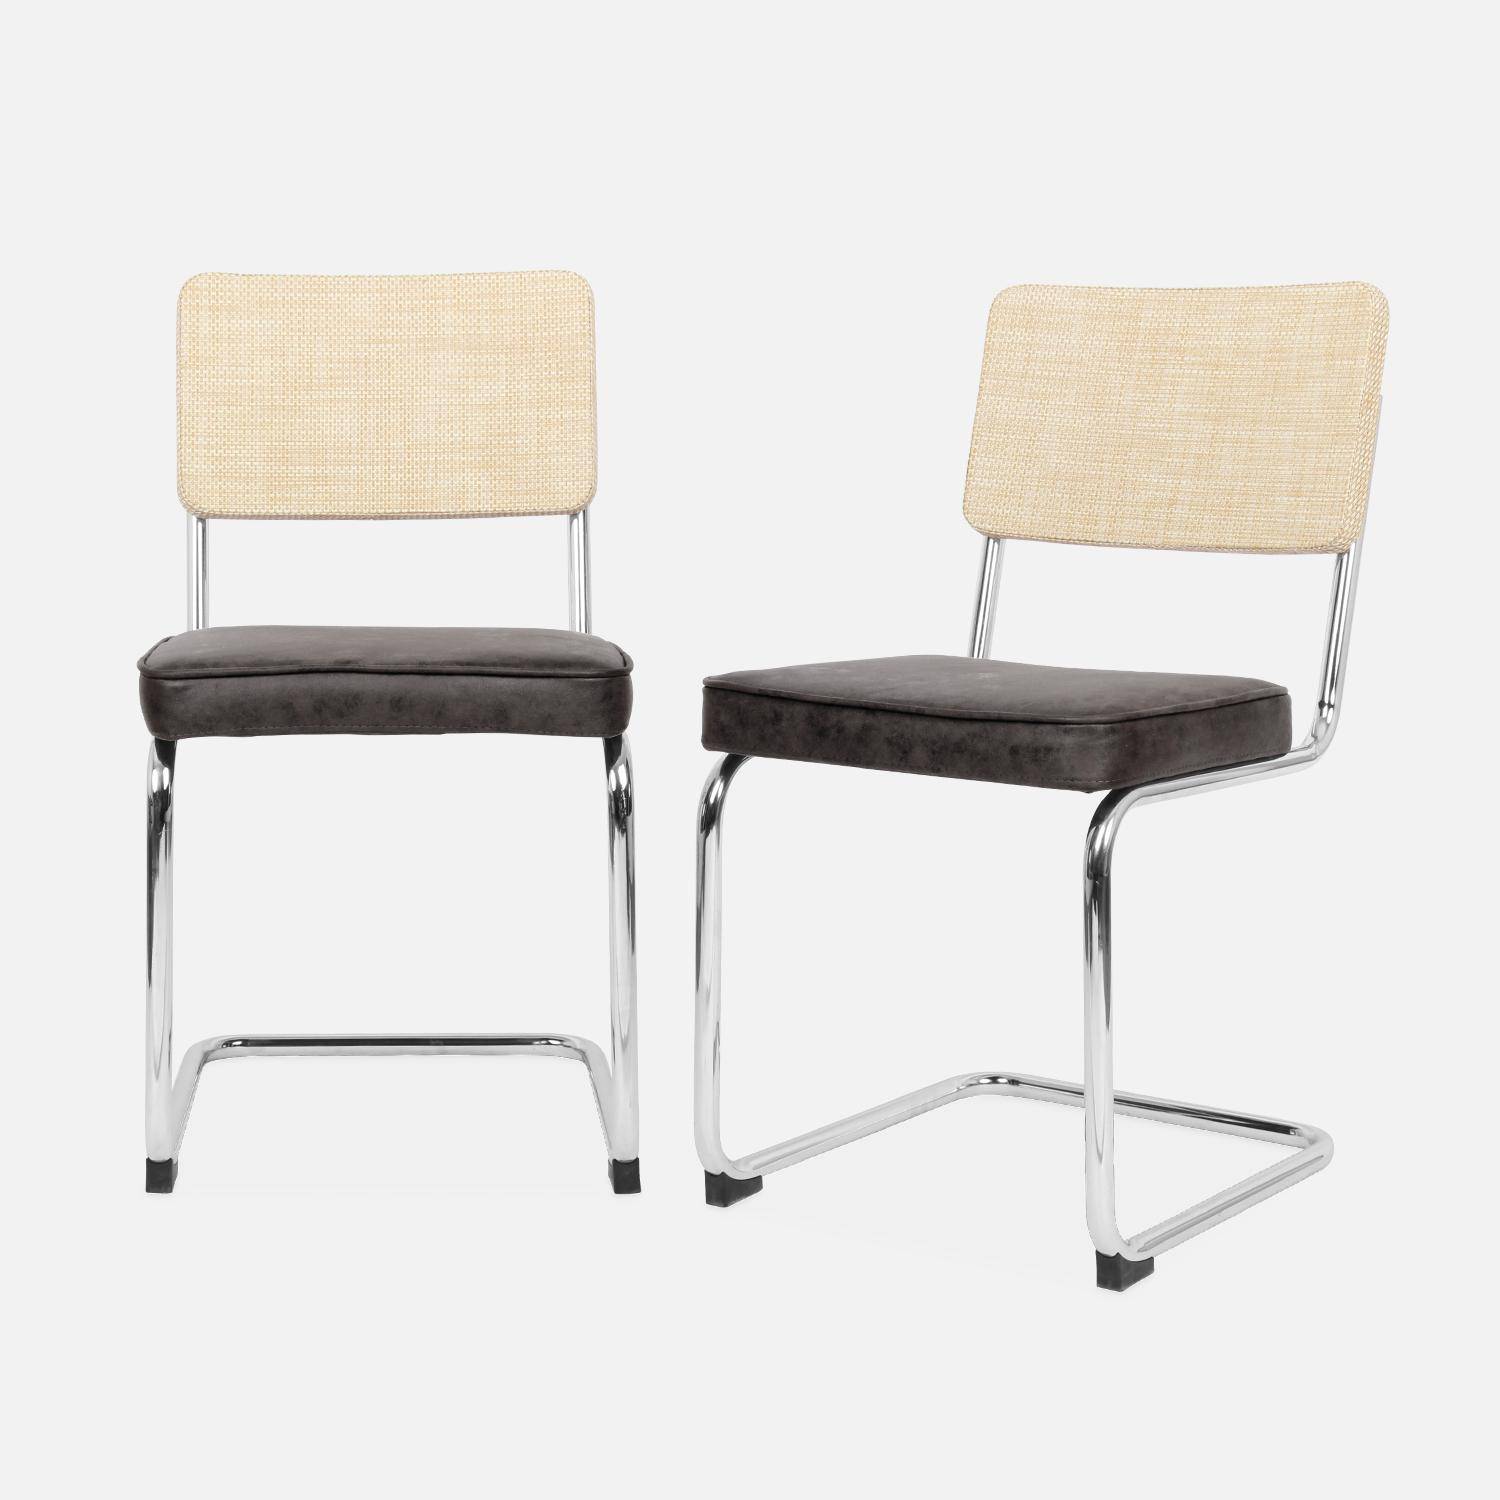 2 cadeiras cantilever - Maja - tecido preto e resina com efeito rattan, 46 x 54,5 x 84,5cm Photo4